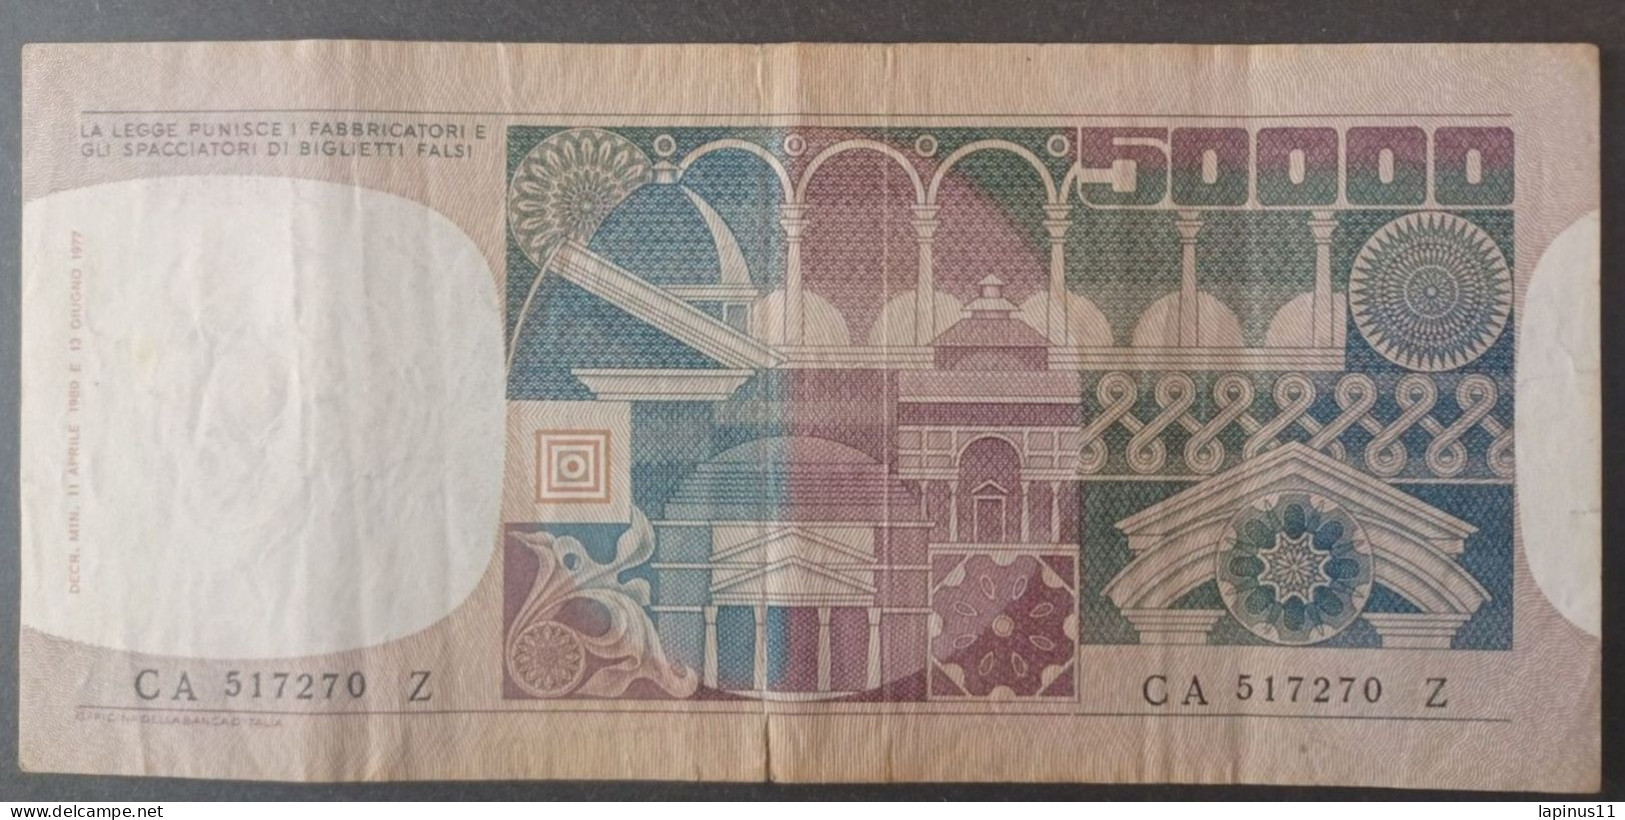 BANKNOTE ITALY 50000 LIRE 1980 CIAMPI STEVANI CIRCULATED - 50000 Liras